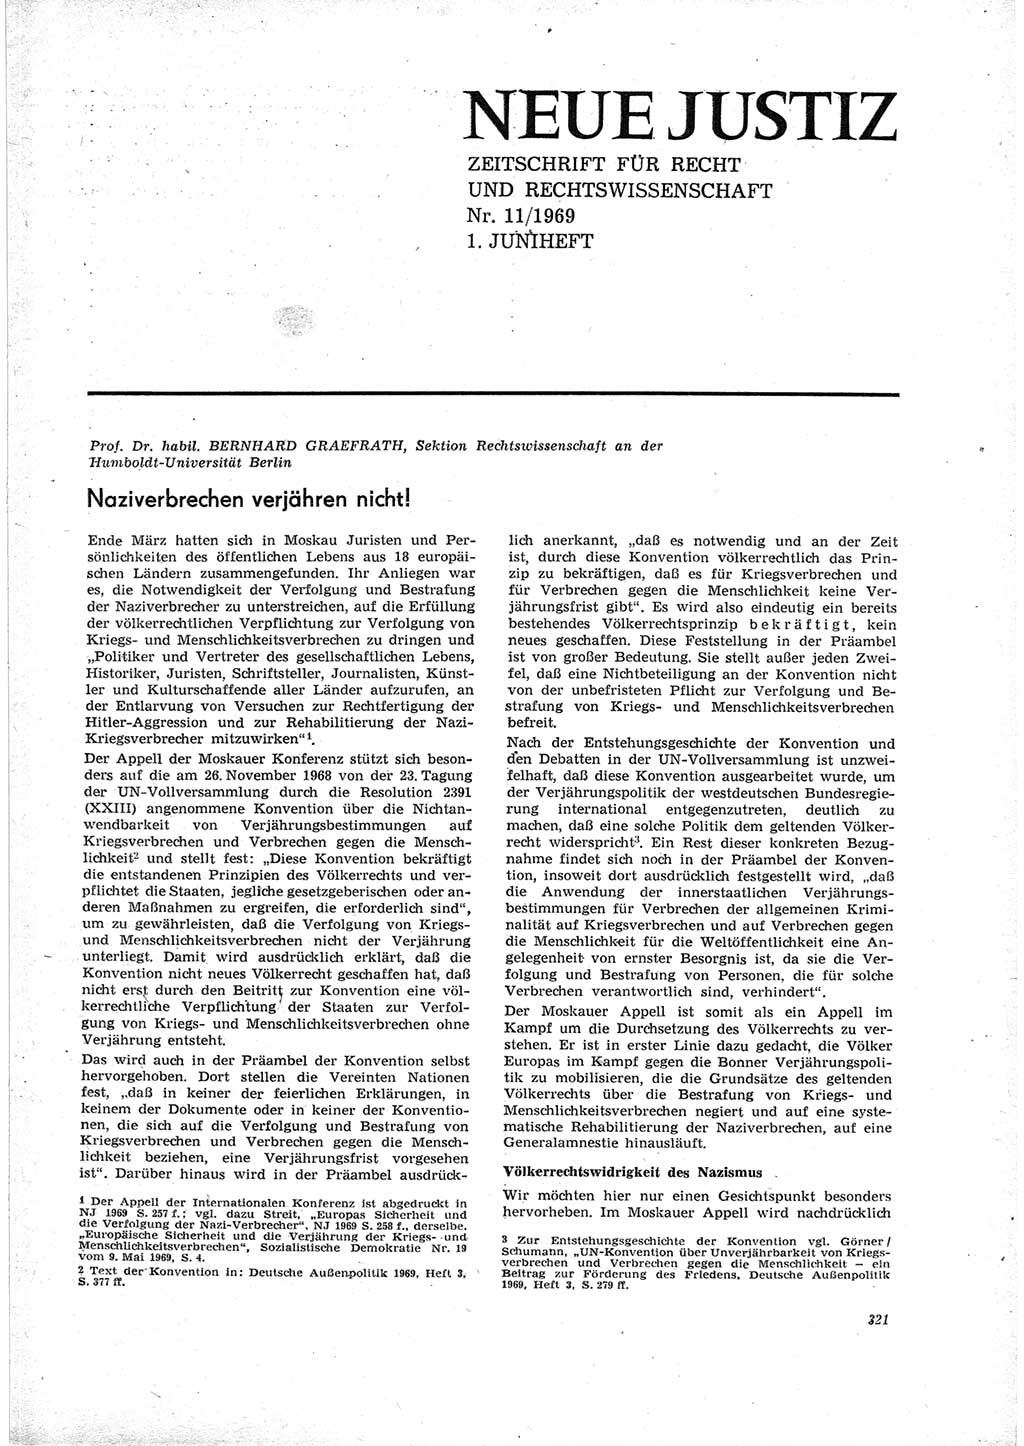 Neue Justiz (NJ), Zeitschrift für Recht und Rechtswissenschaft [Deutsche Demokratische Republik (DDR)], 23. Jahrgang 1969, Seite 321 (NJ DDR 1969, S. 321)